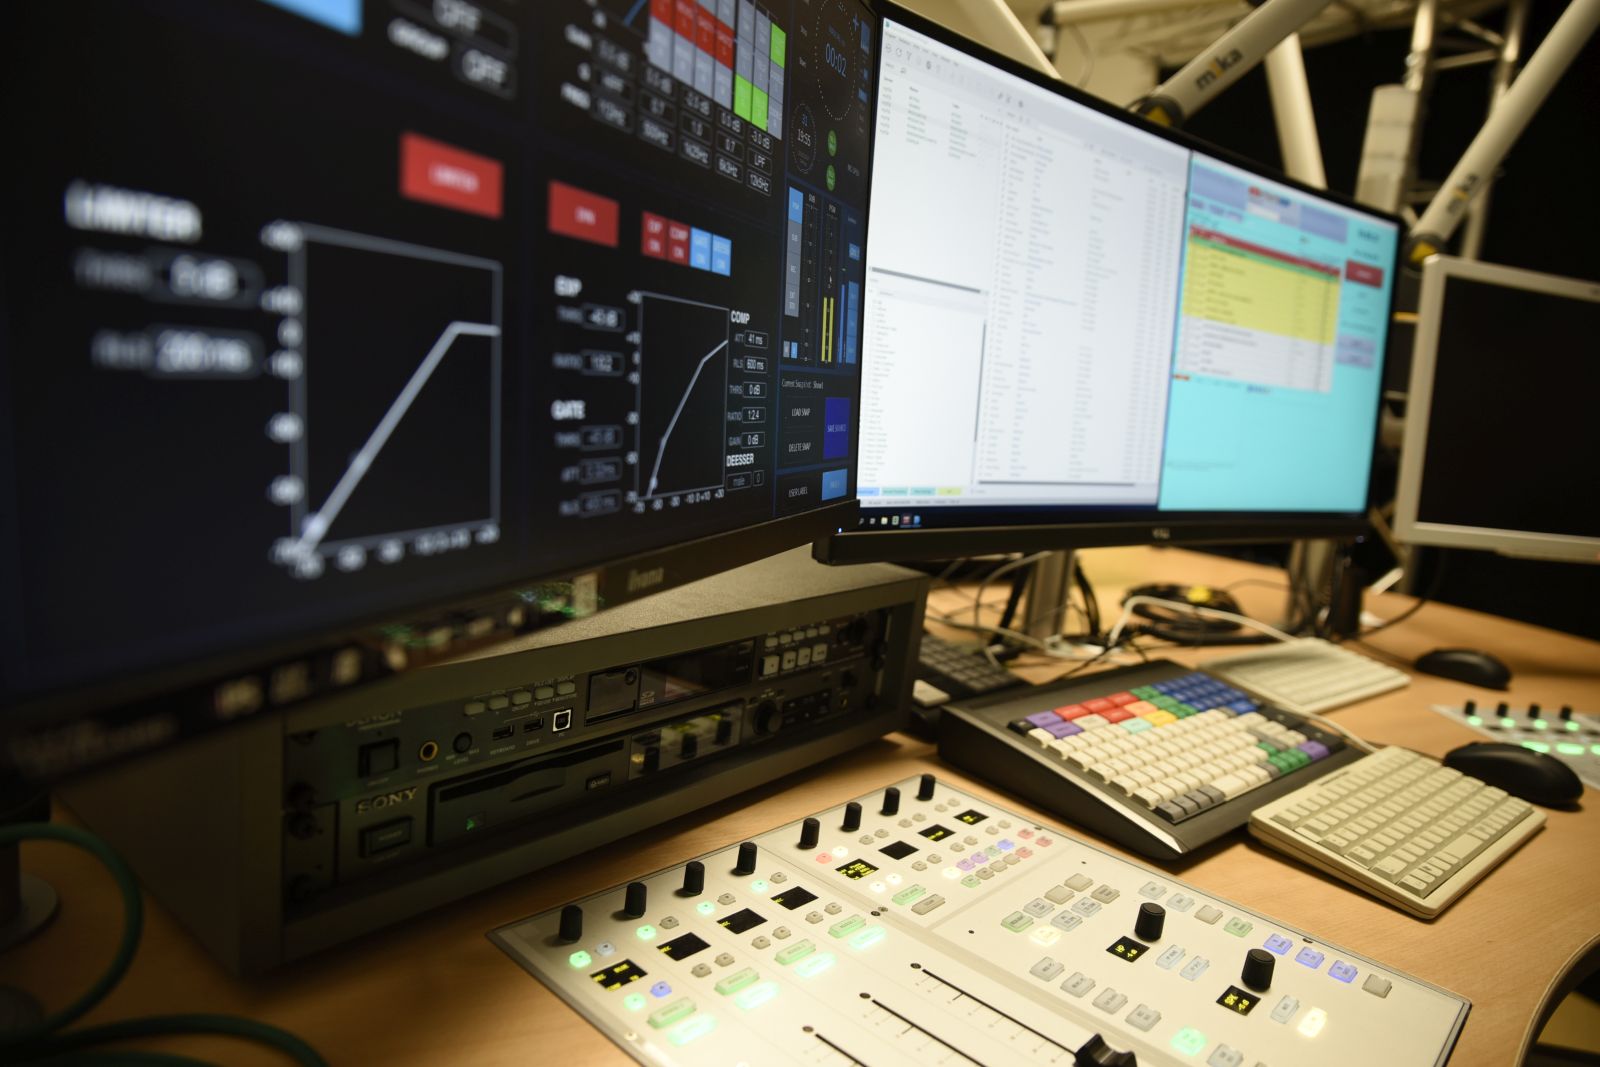 Große Bildschirme, bunte Knöpfe - im neuen FAU-Rundfunkstudio können professionelle Radiosendungen produziert werden. (Bild: FAU/Celina Henning)